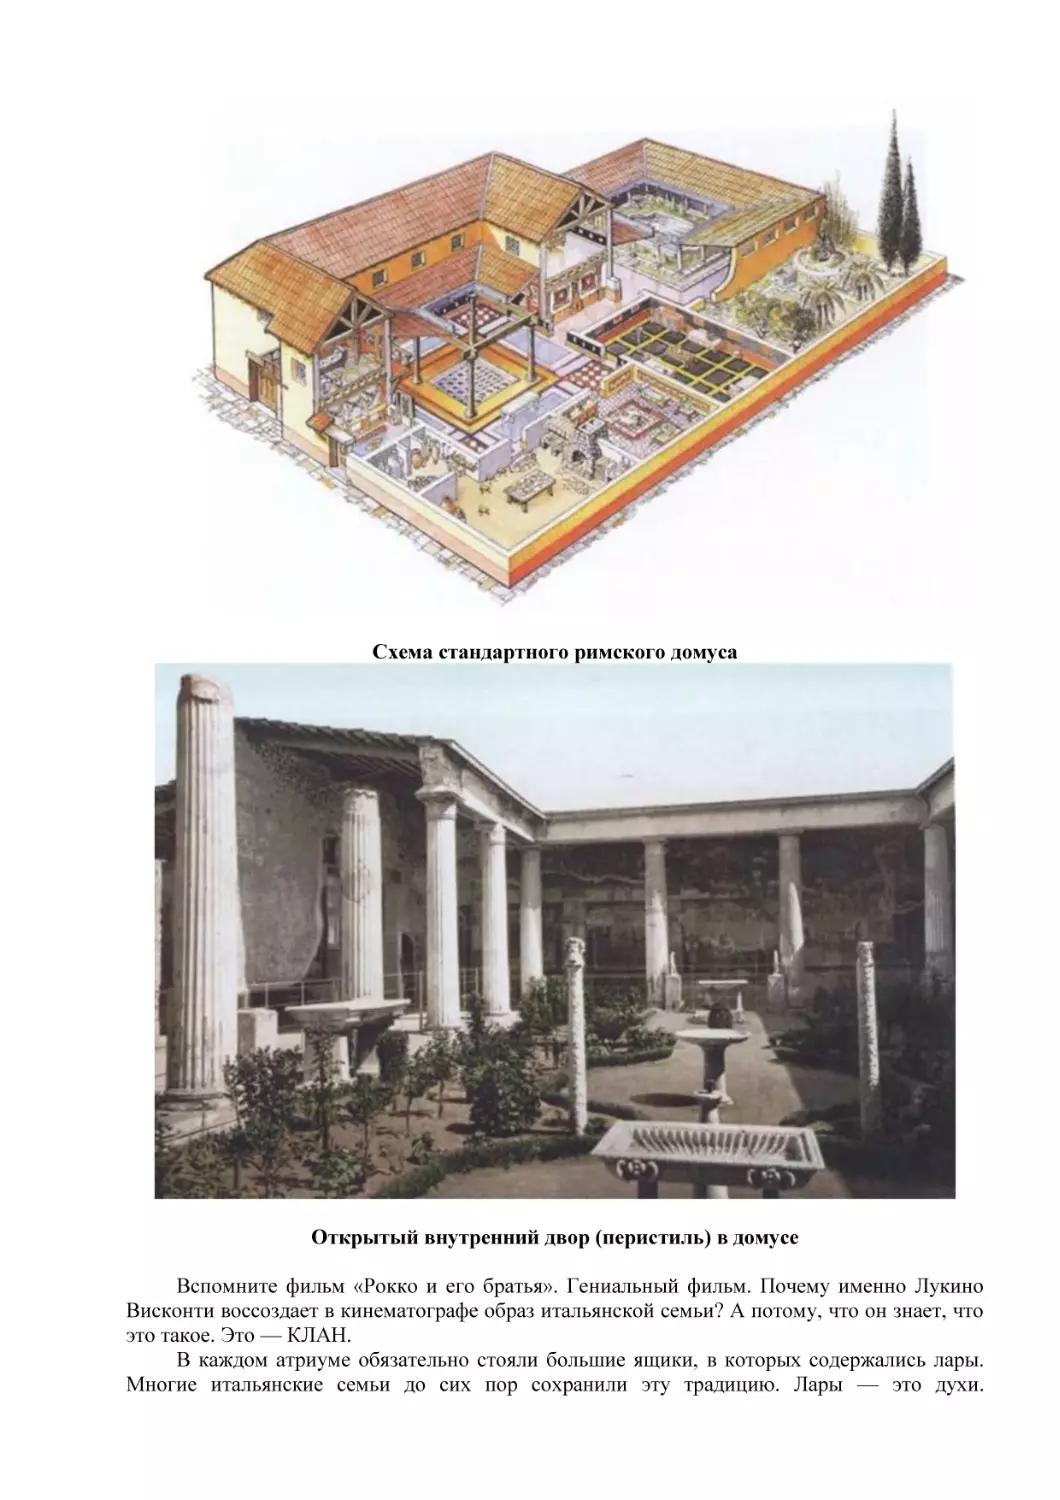 Схема стандартного римского домуса
Открытый внутренний двор (перистиль) в домусе